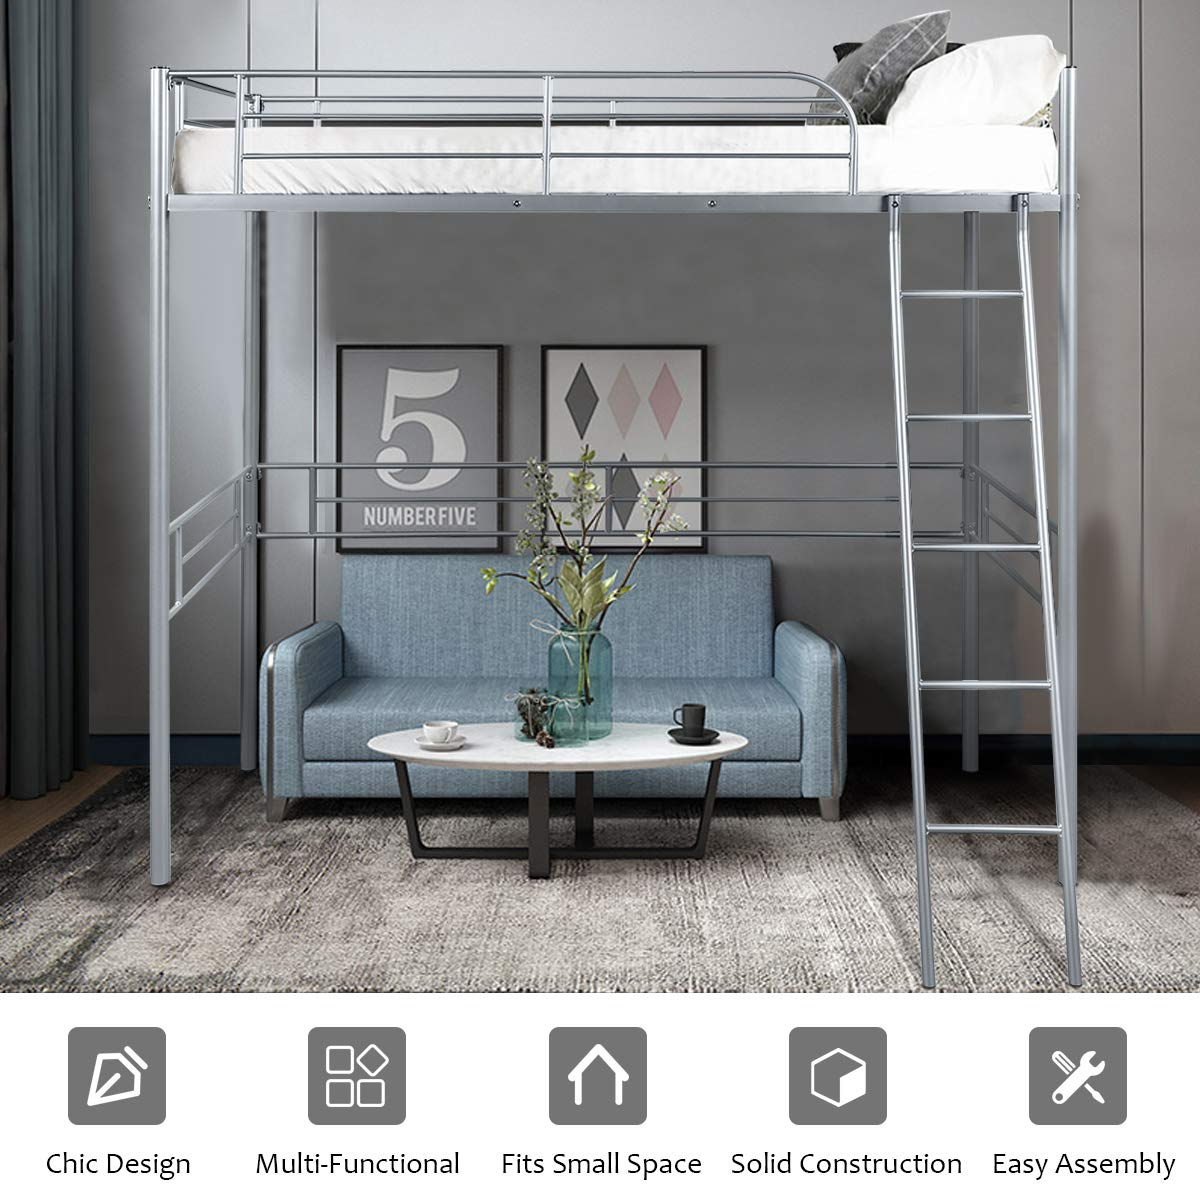 Giantex Heavy Duty Twin Loft Bed with Ladder